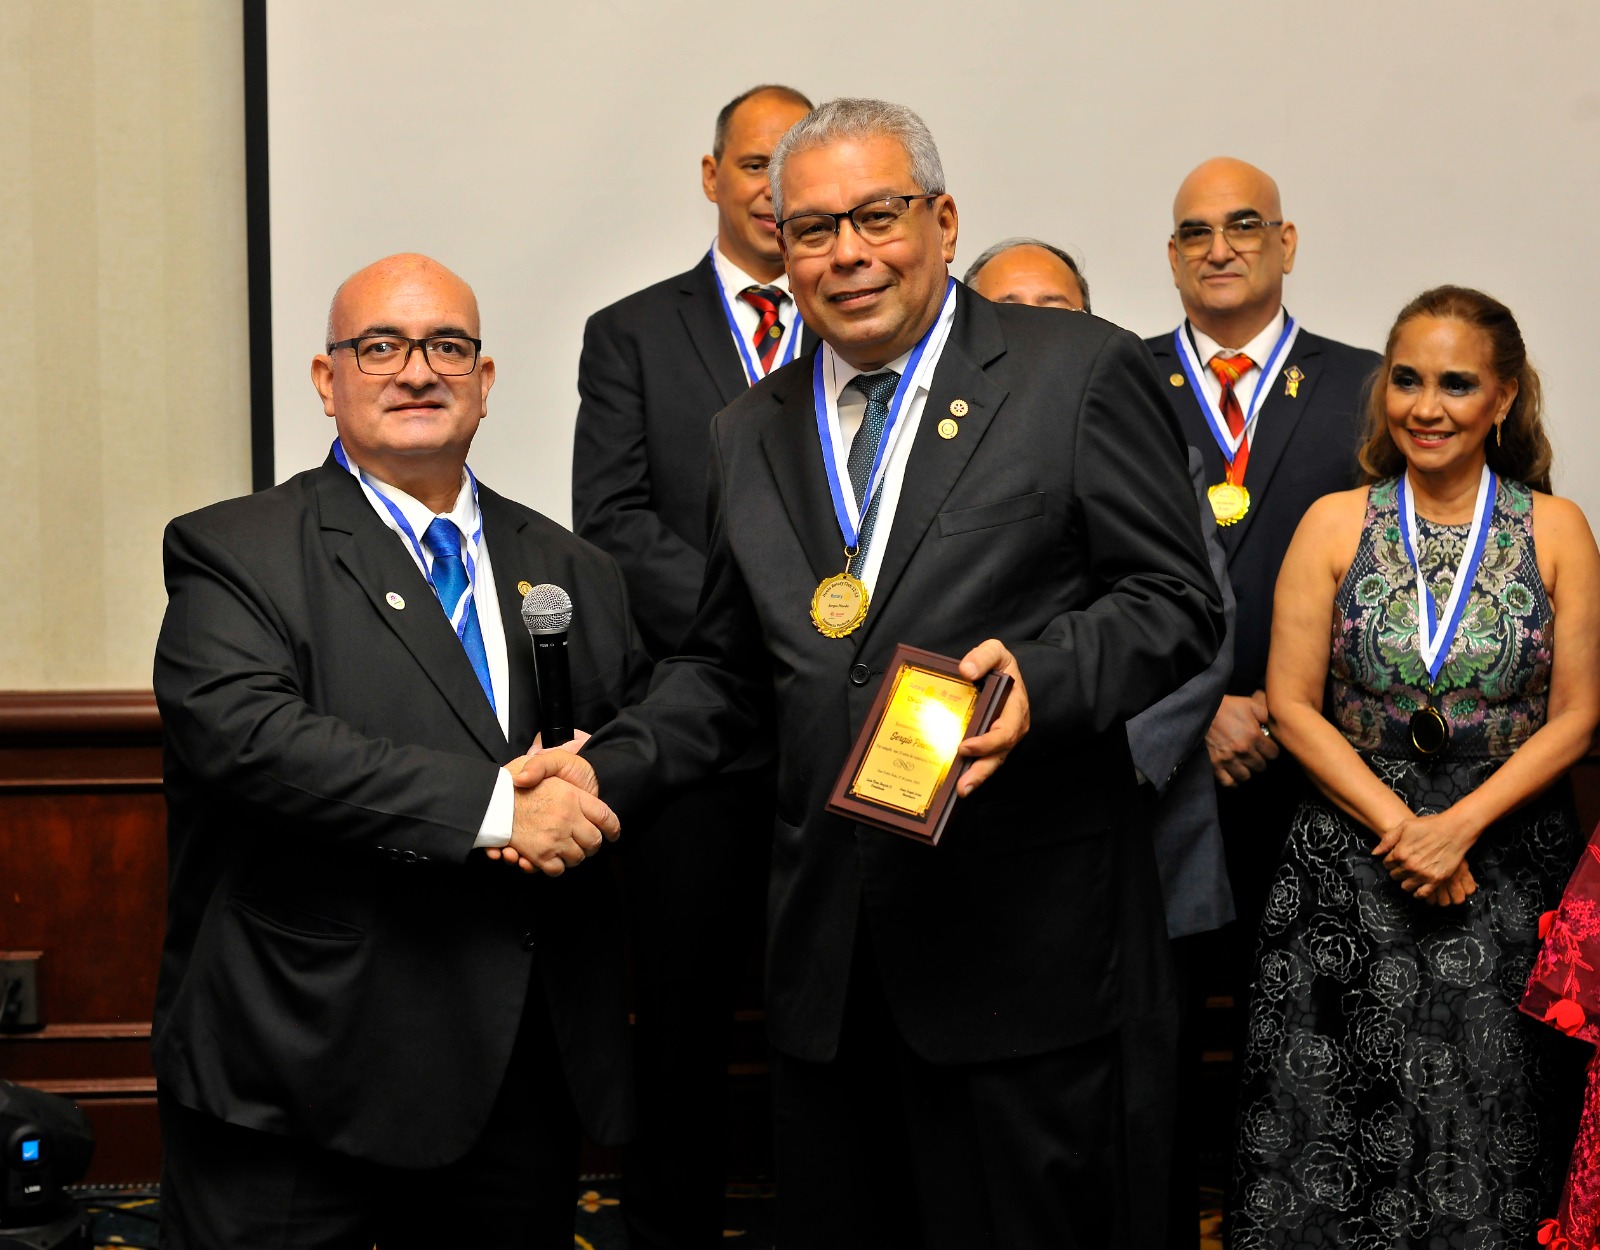 Creador de esperanza y desarrollo: Juan Carlos Díaz asume presidencia de Usula Rotary Club